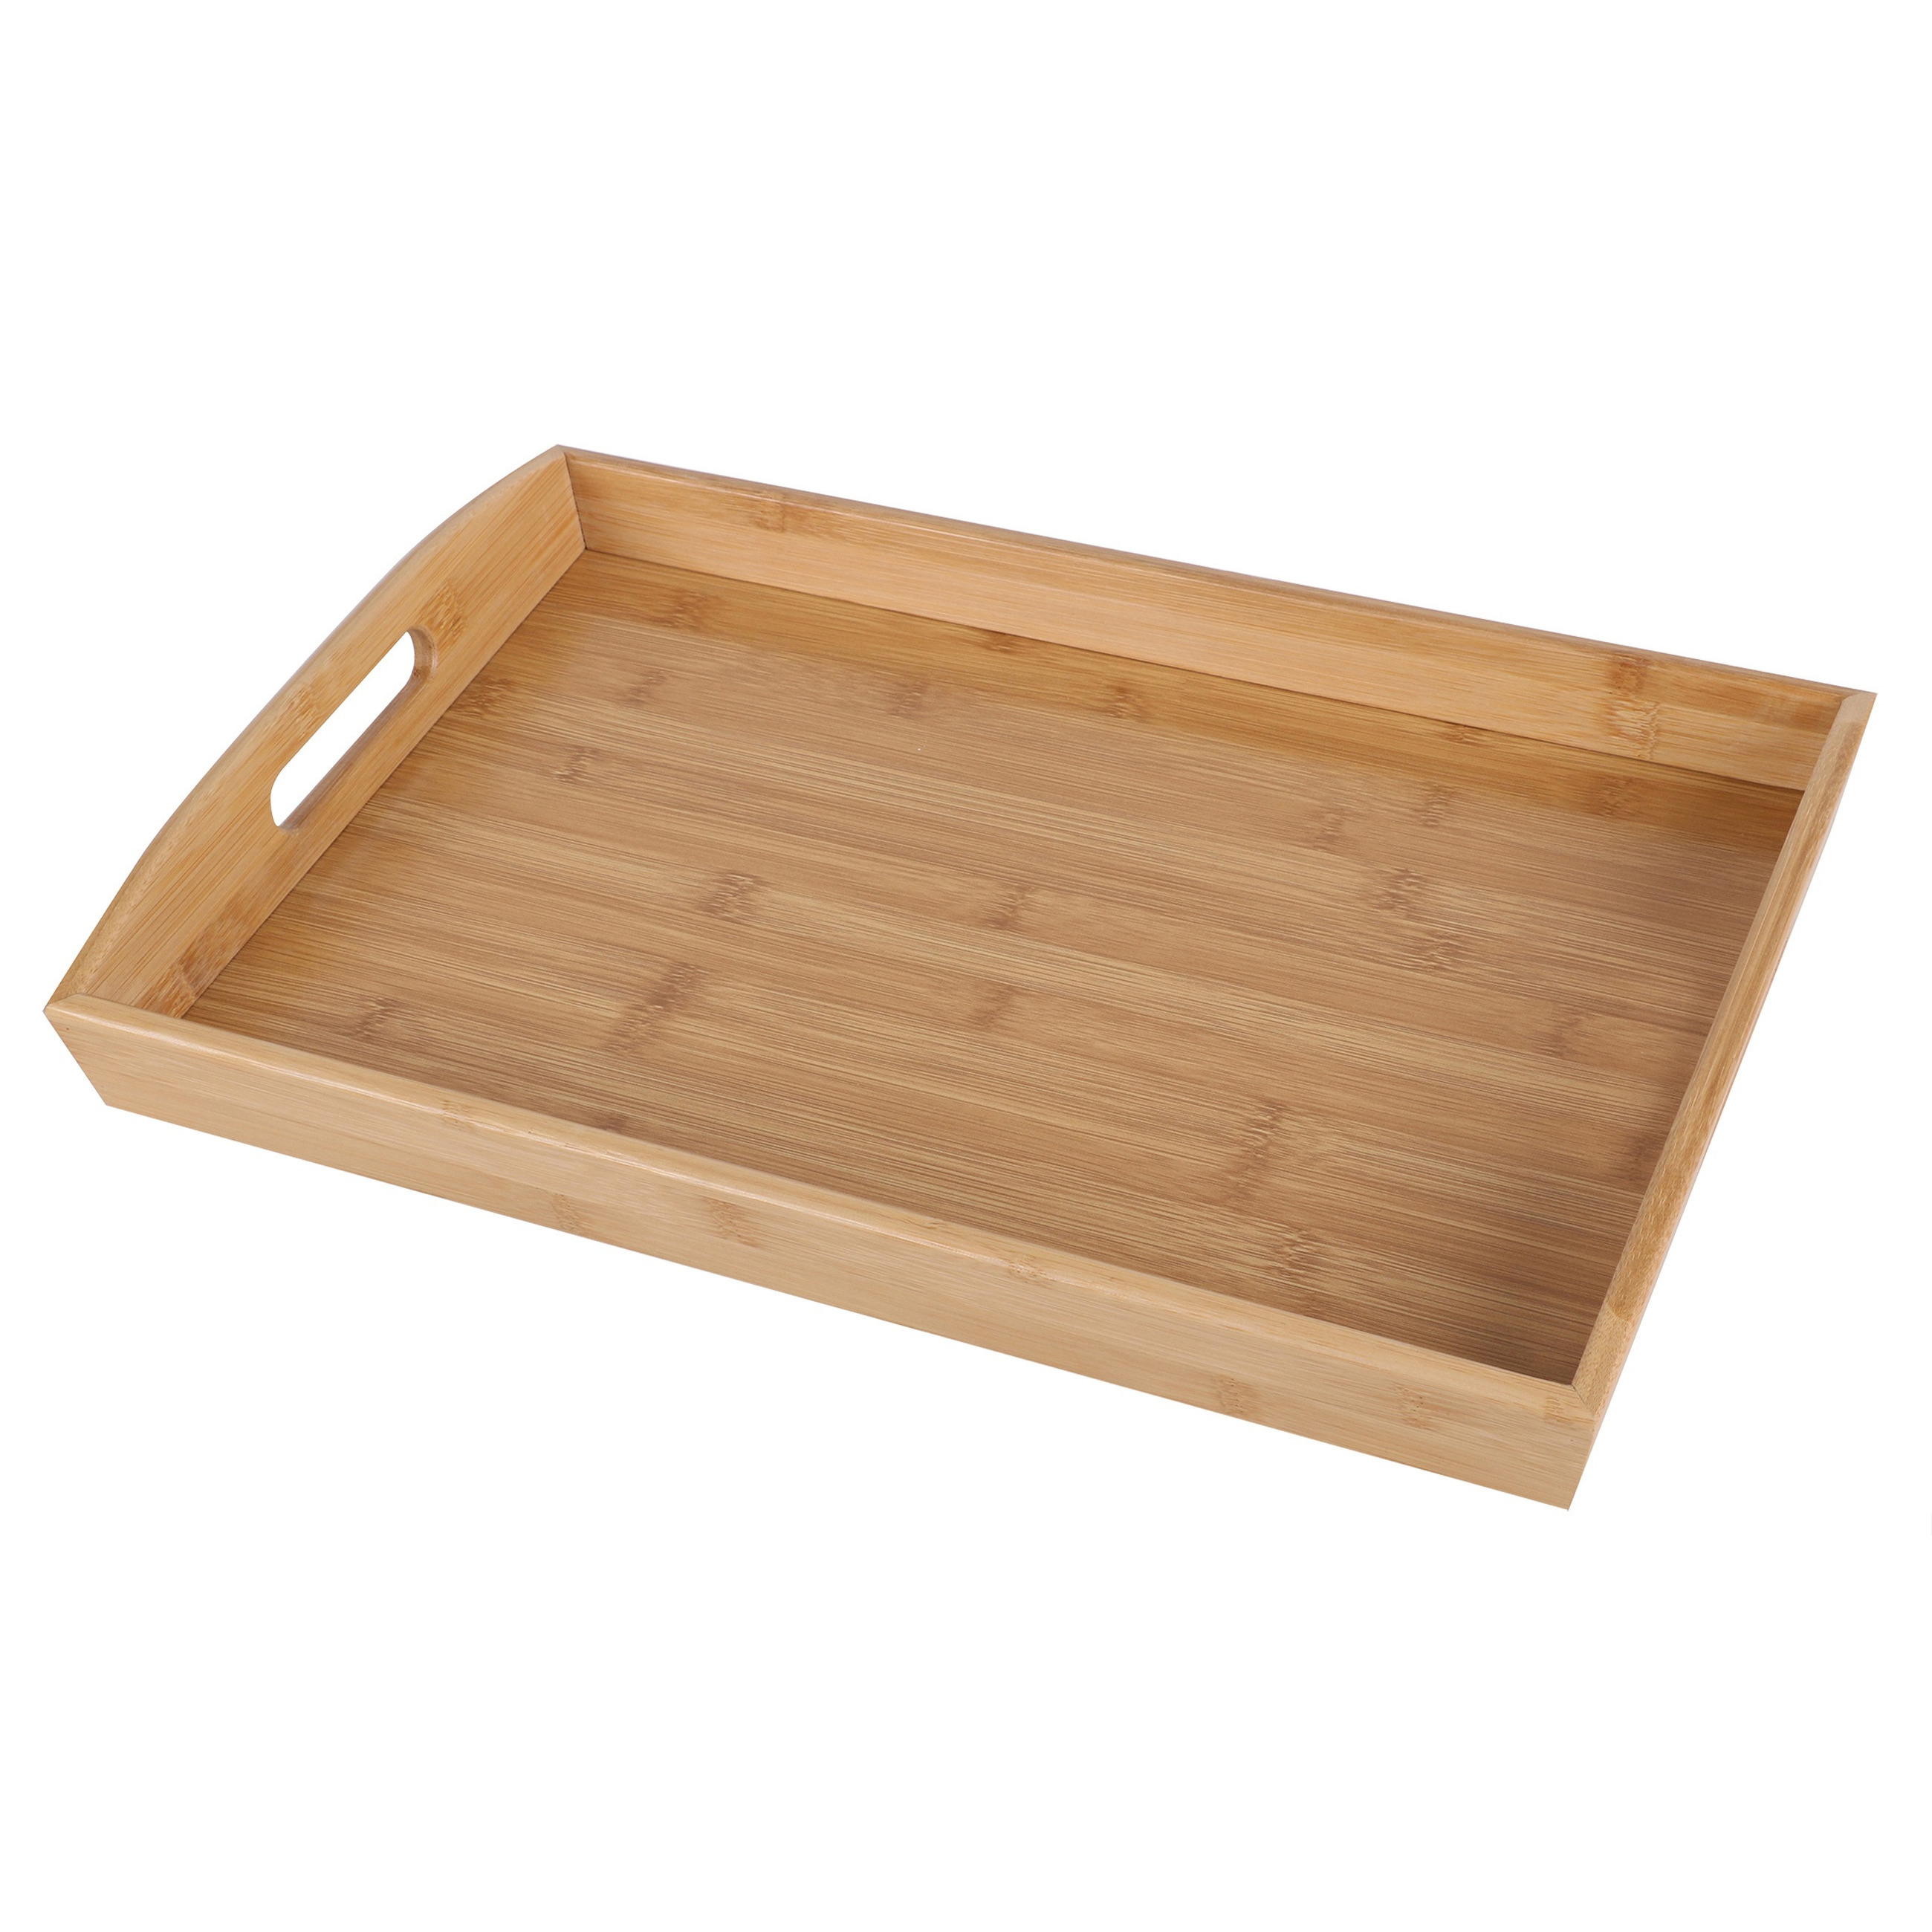 Bambou & Co Dienblad/serveerblad Breakfast - rechthoek - bamboe hout - x 29 x 4 cm - met handvaten -